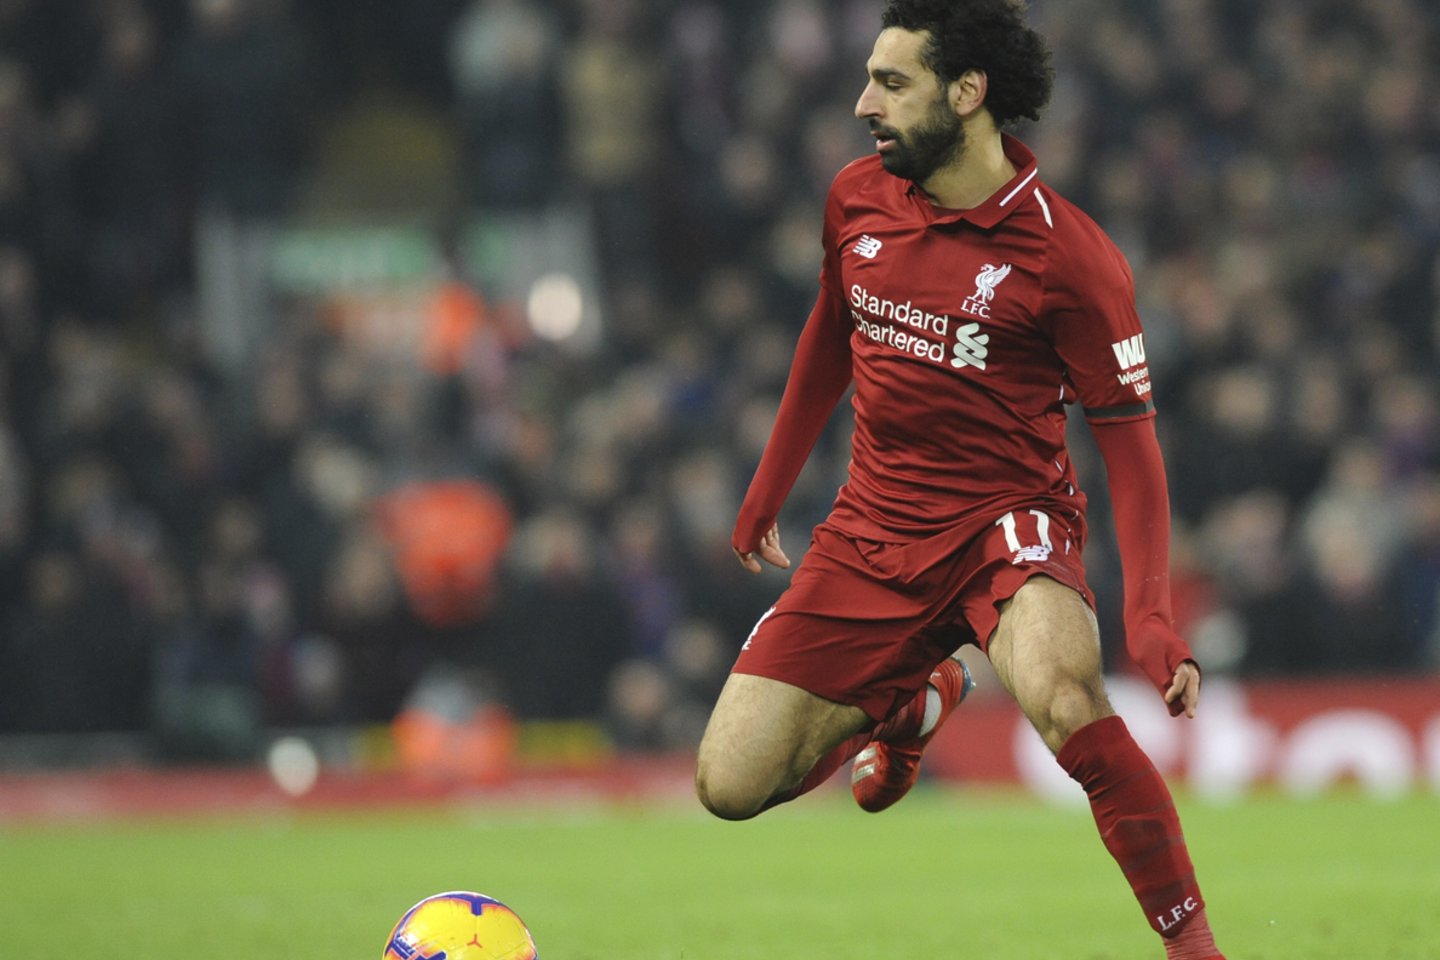 Mohamedas Salah galėjo persikelti į Italiją ar Ispaniją, tačiau nepanoro<br>AP nuotr.